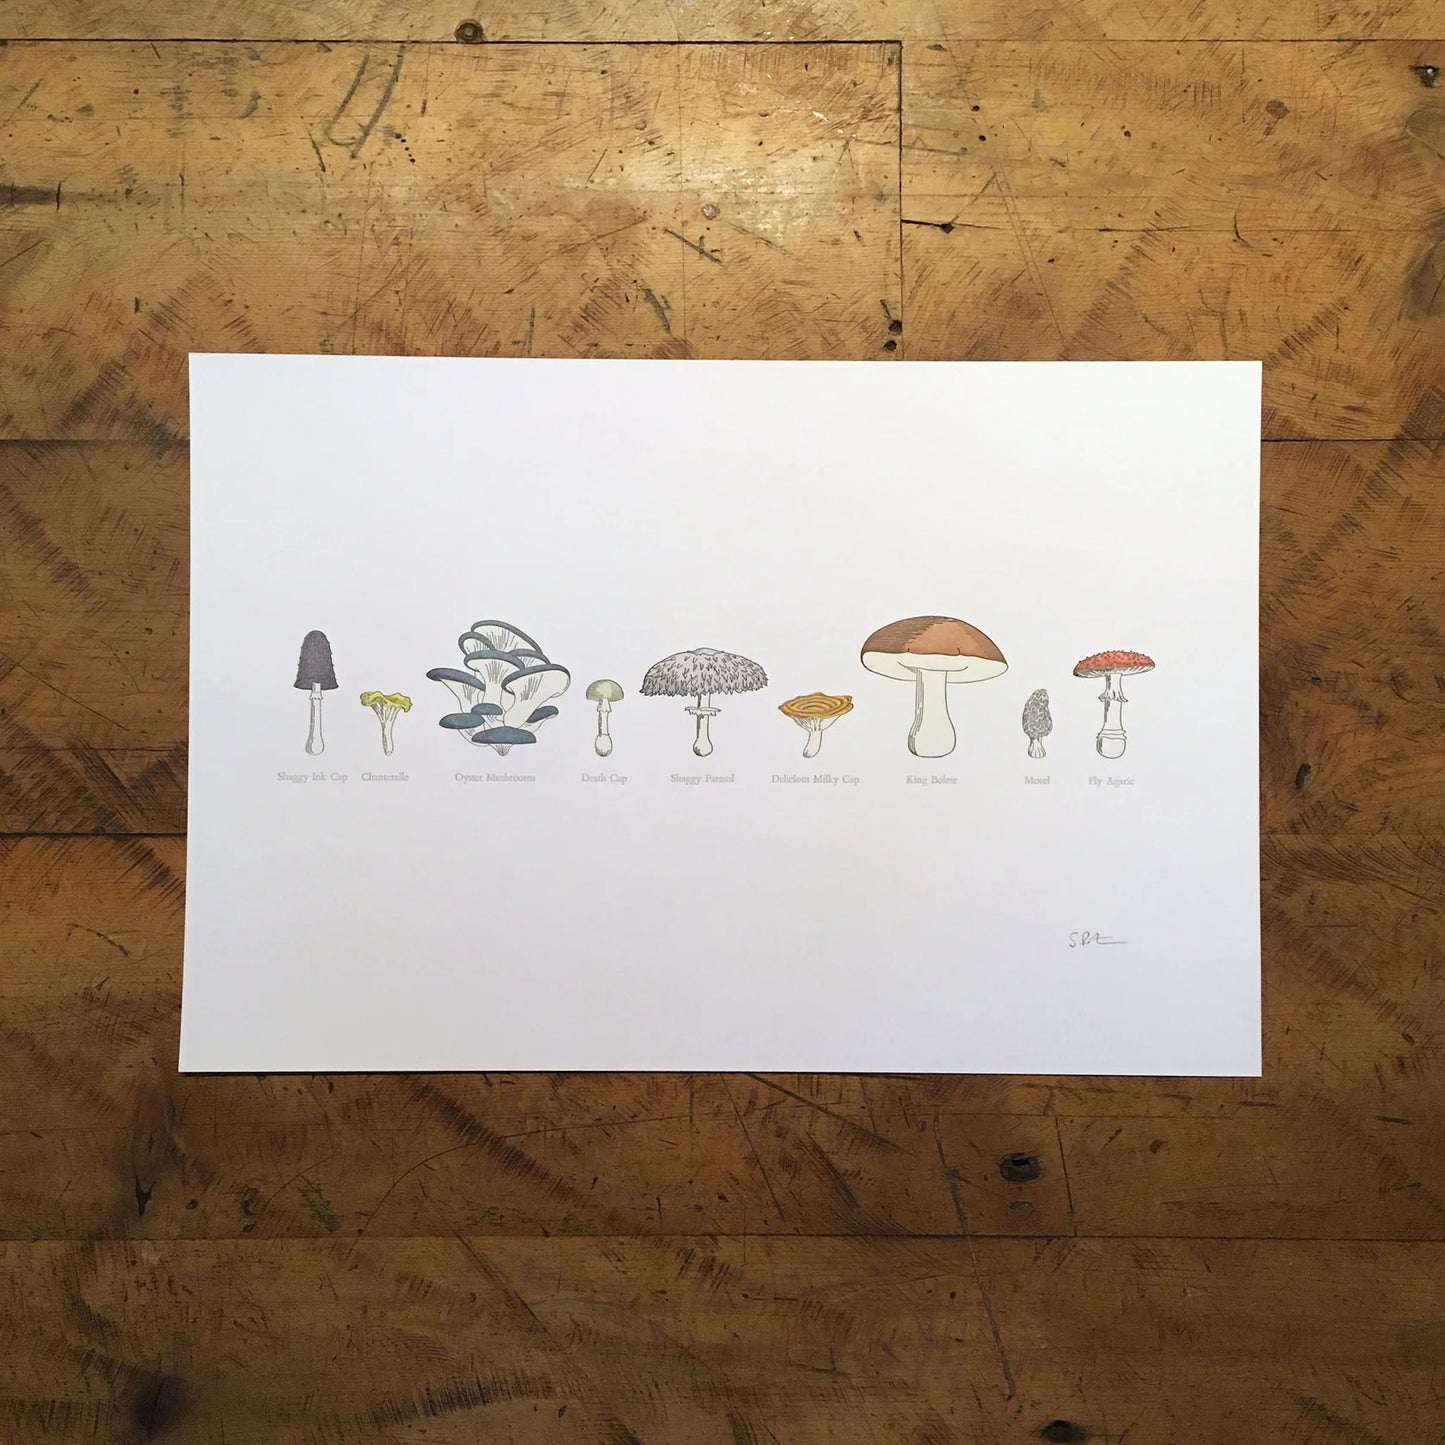 A Few Mushrooms Letterpress Print by Green Bird Press